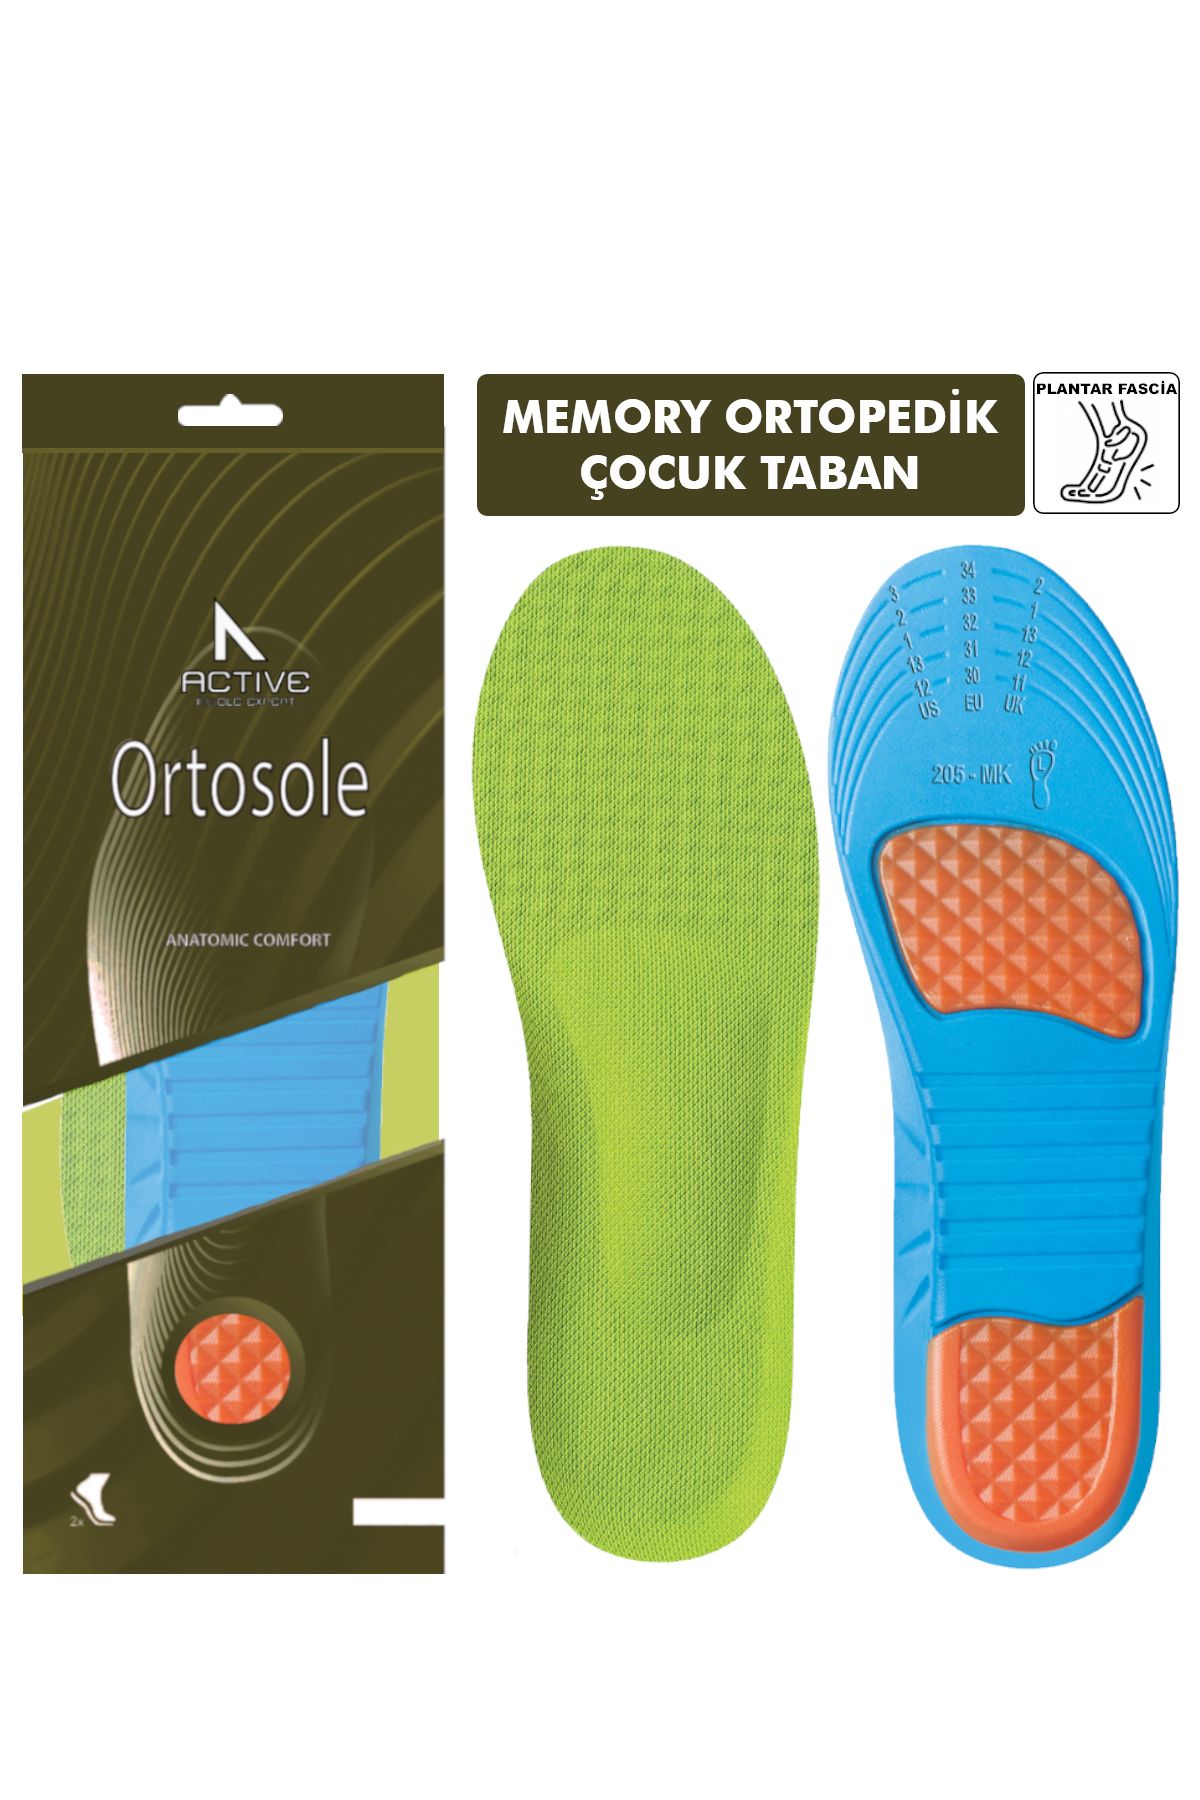 Ortosole Darbe Emici Memory Foam Ayakkabı Tabanlığı, Rahatlık Sağlayan Kemer Destekli Tabanlık - Çocuk